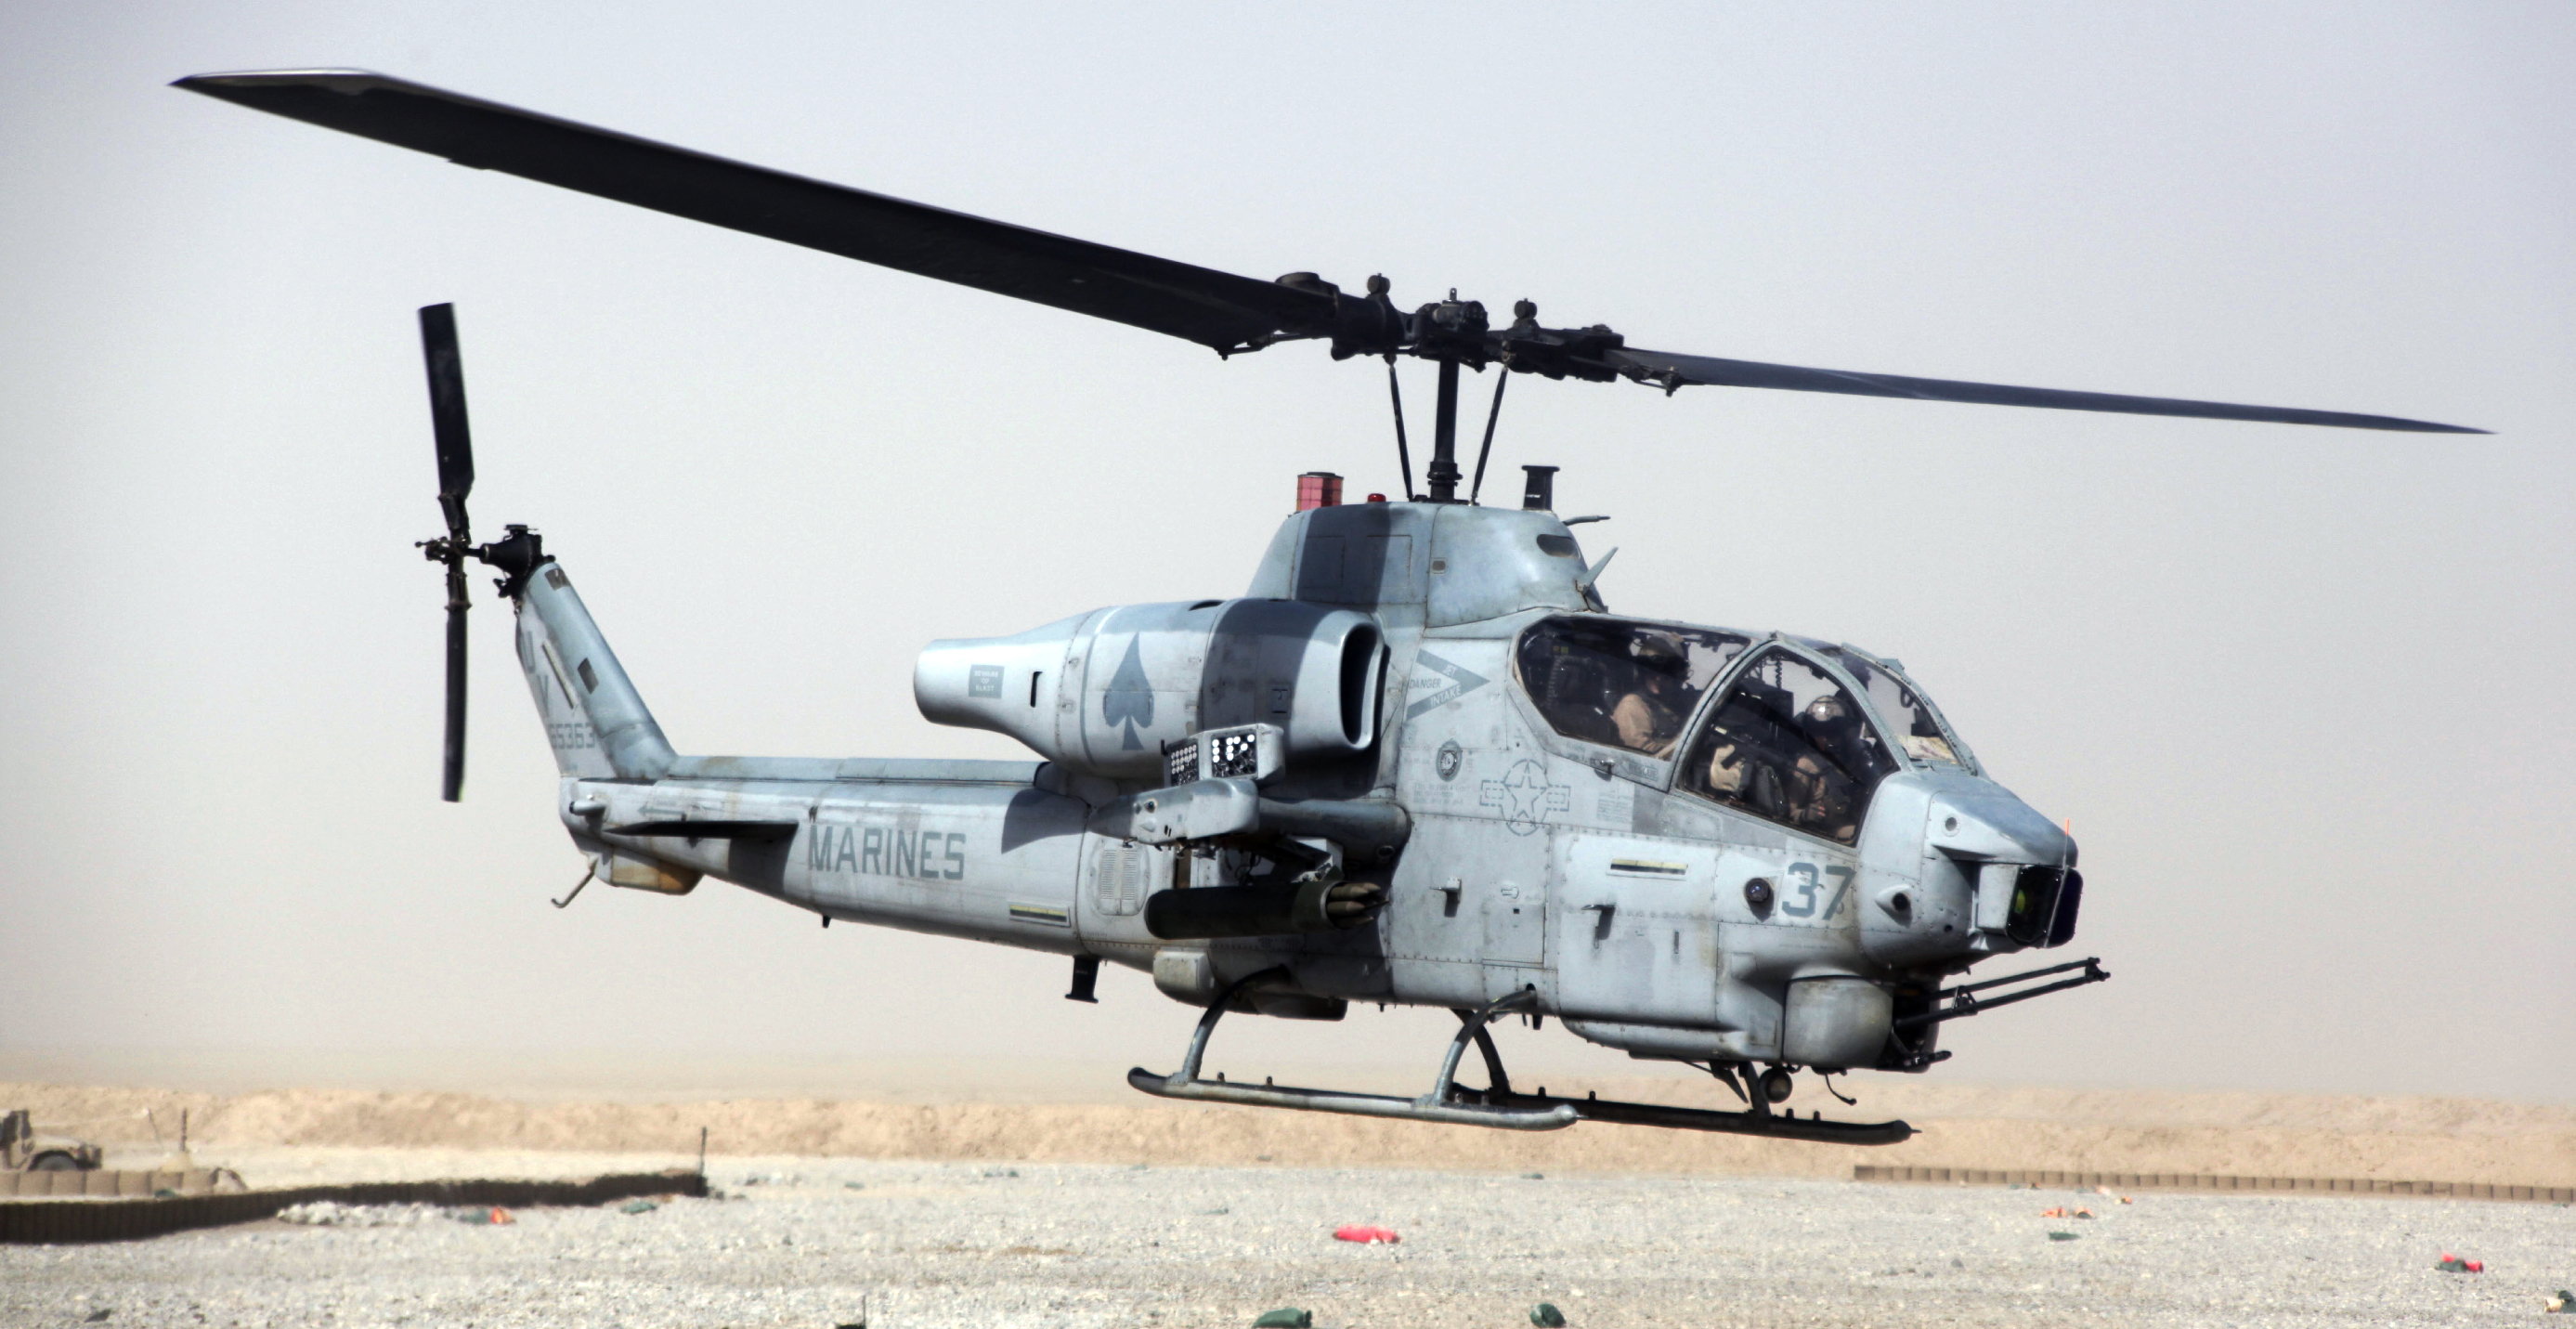 Stridshelikoptern av modellen AH-1W, även kallad Cobra-helikopter kraschade efter en kollision. Helikoptern väger över 2,500 kilo.